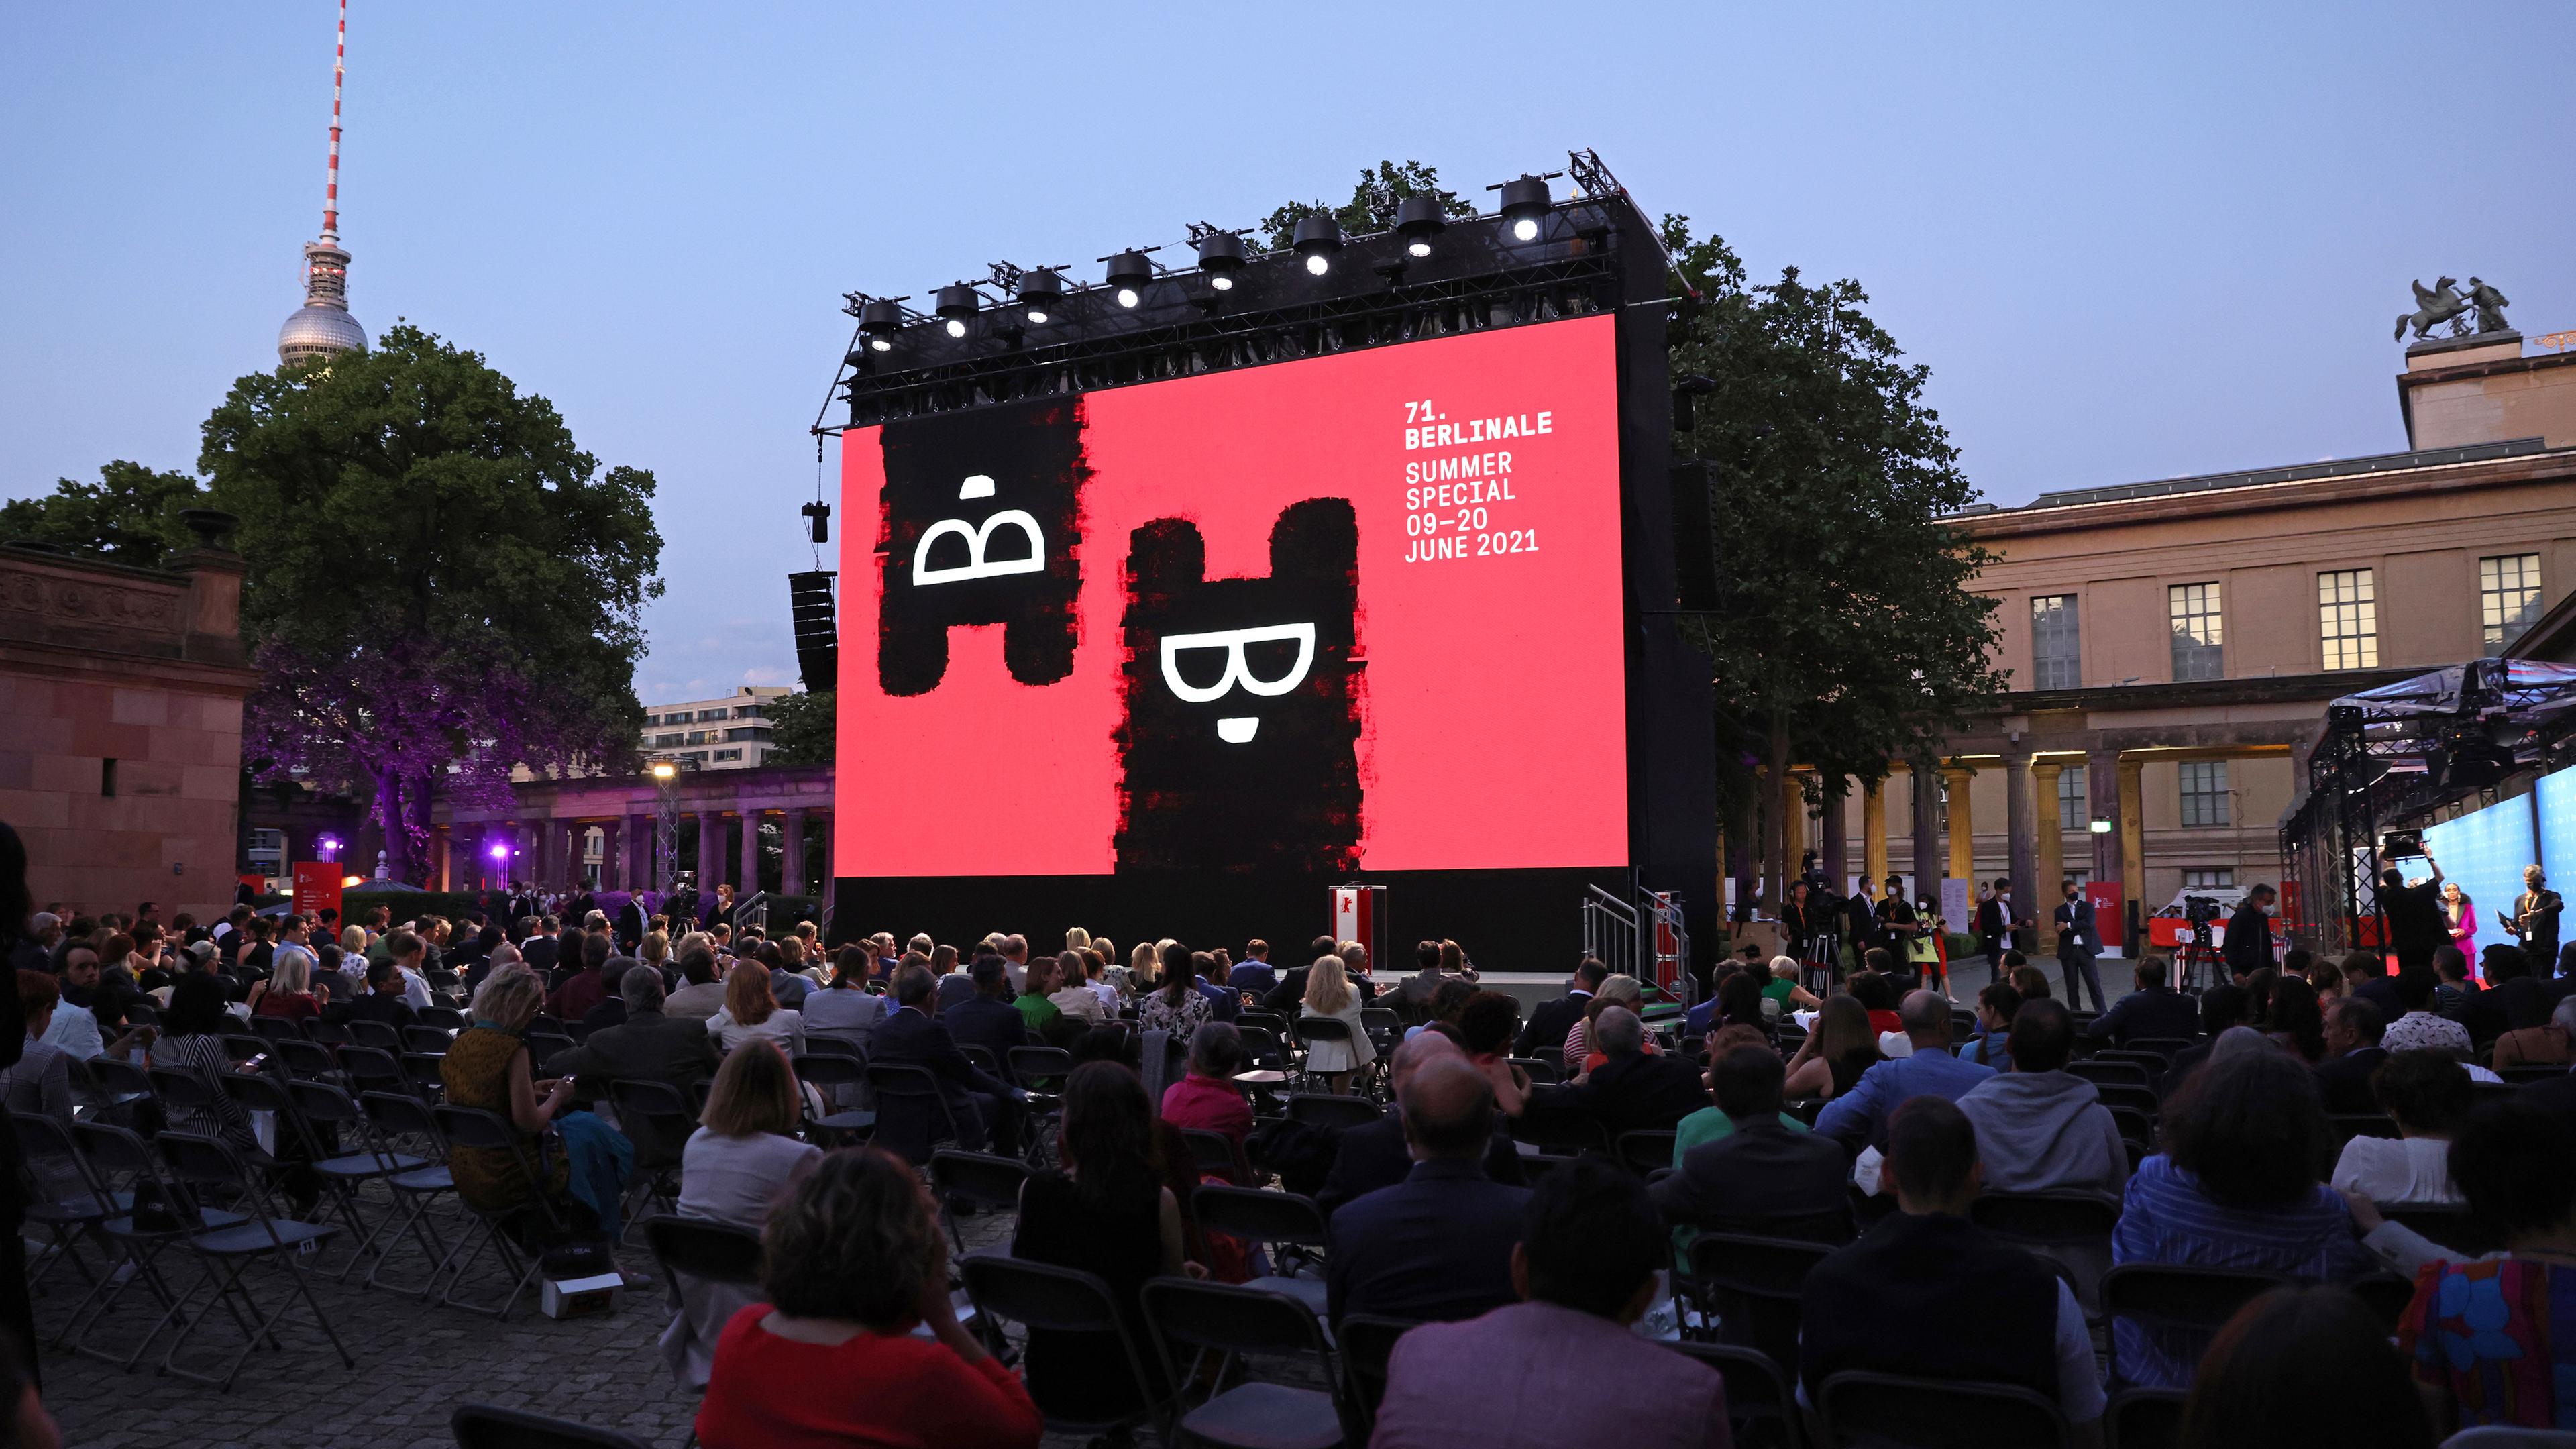 Eröffungsveranstaltung der Berlinale "Summer Special" 2021 auf der Berliner Museumsinsel